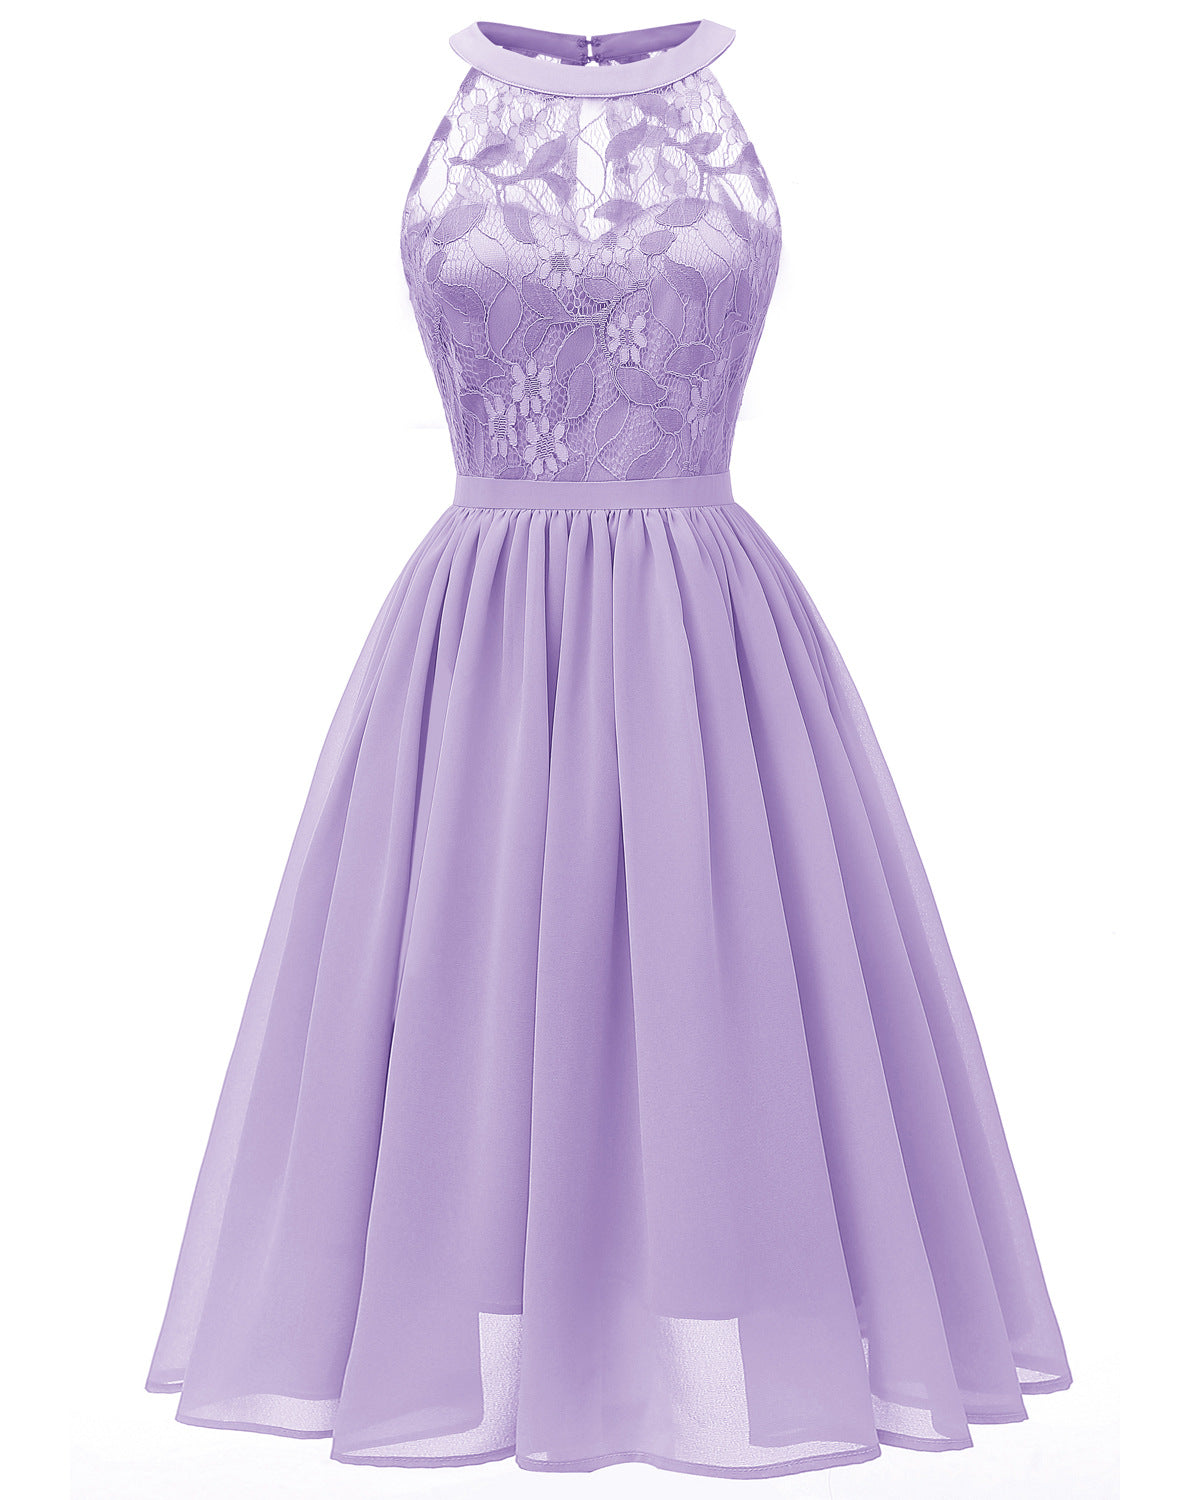 Sleeveless Lace Dress